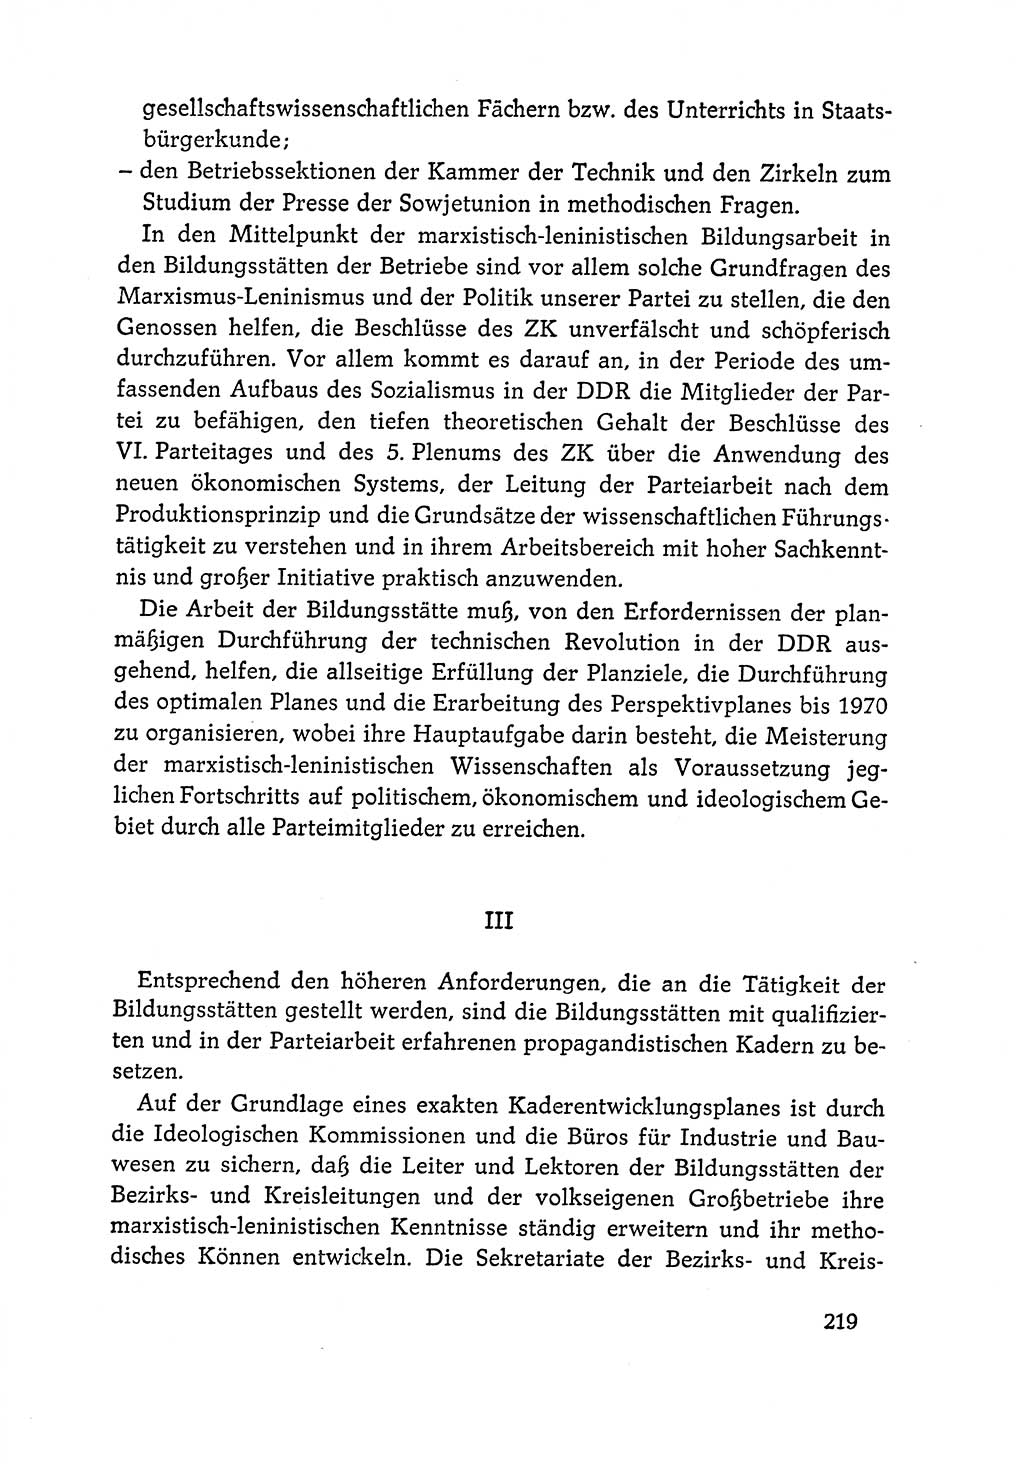 Dokumente der Sozialistischen Einheitspartei Deutschlands (SED) [Deutsche Demokratische Republik (DDR)] 1964-1965, Seite 219 (Dok. SED DDR 1964-1965, S. 219)